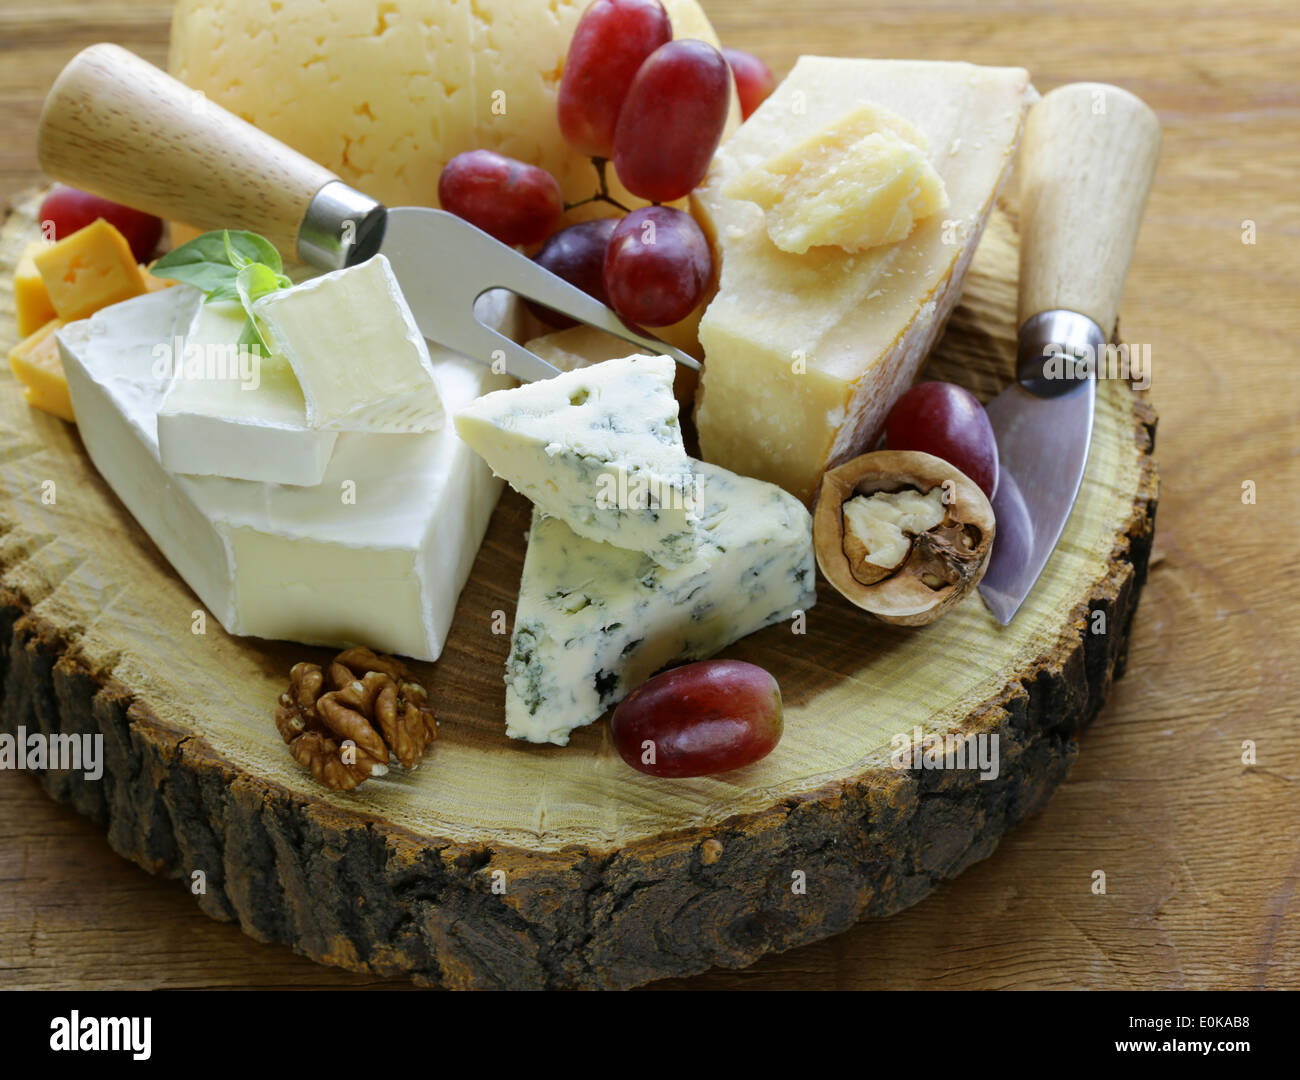 Avec un assortiment de fromages fromages (brie, bleu, parmesan, cheddar) Banque D'Images